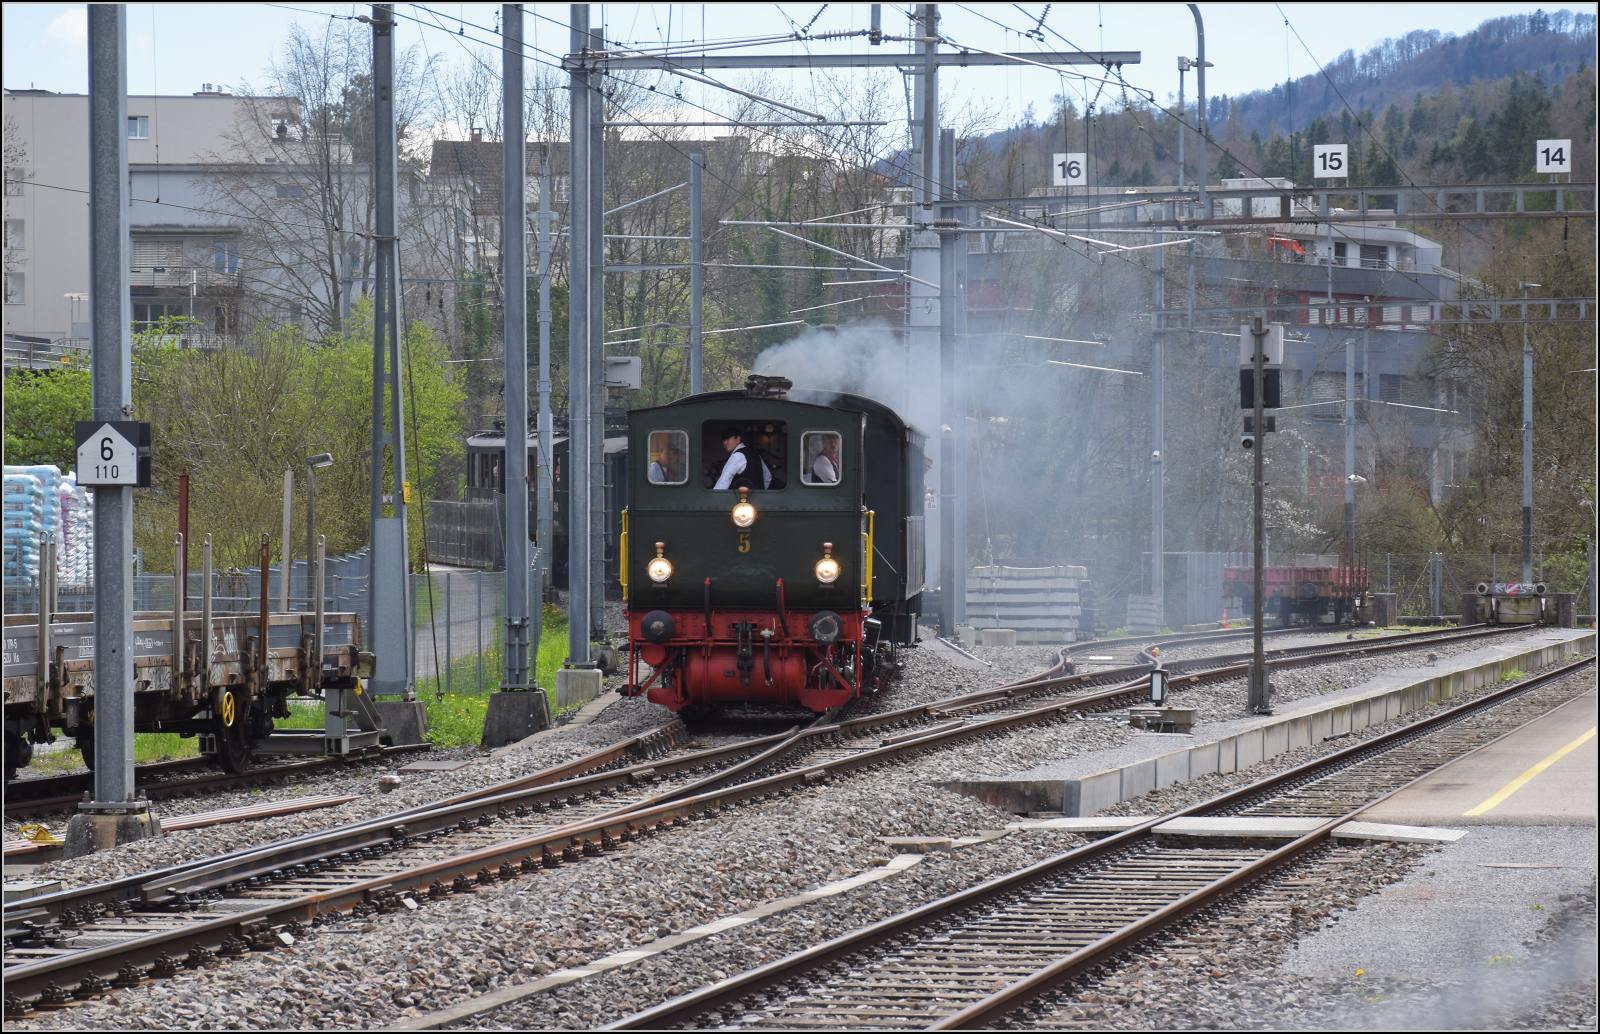 Zu den Ostereiern im Sihlwald.

E 3/3 5 'Schnaaggi Schaaggi' der Sihlthalbahn bei Einfahrt in den Bahnhof Langnau-Gattikon. März 2024.